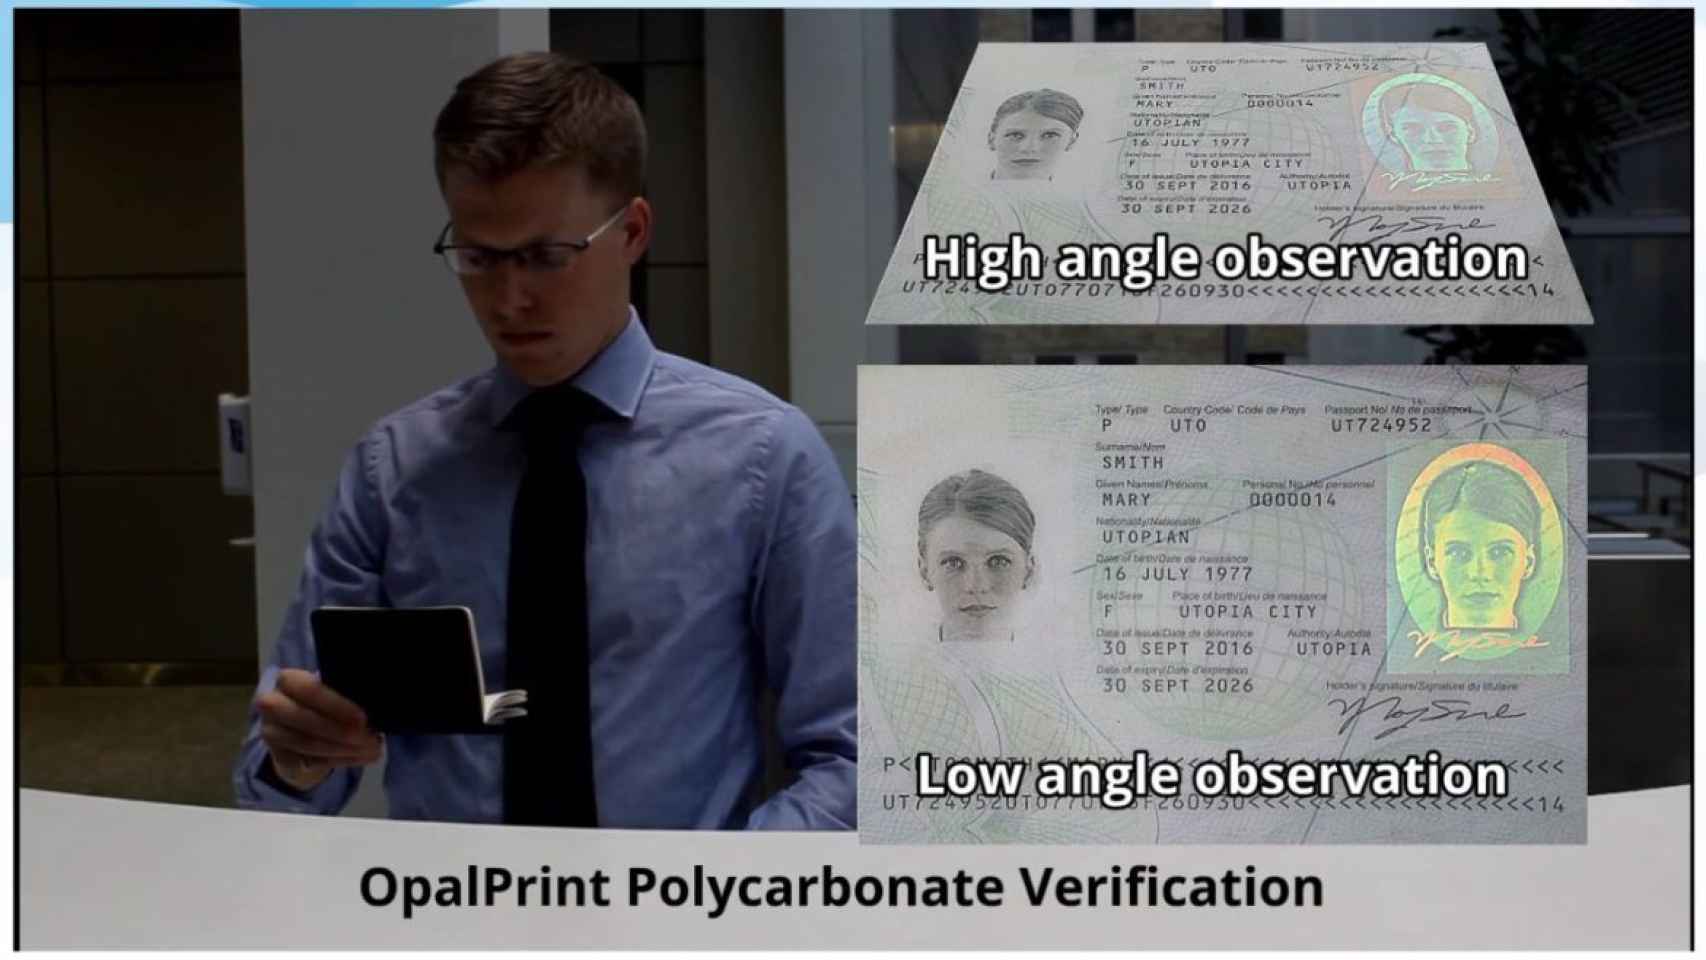 Demostración de verificación con el sistema OpalPrint.